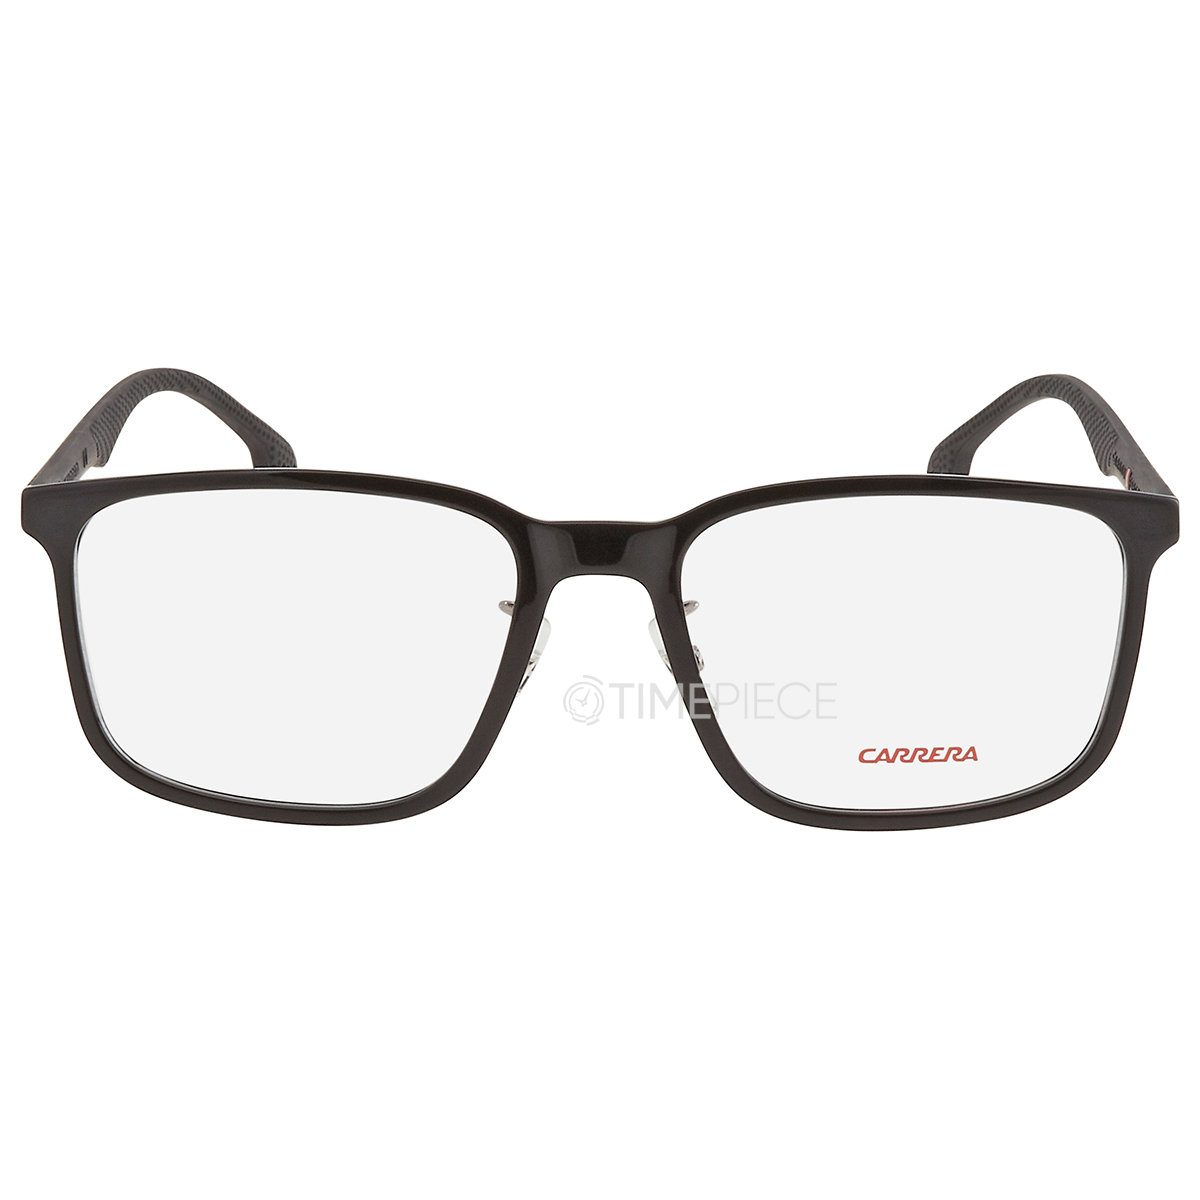 Carrera Demo Rectangular Mens Eyeglasses CARRERA 8840/G 0807 55